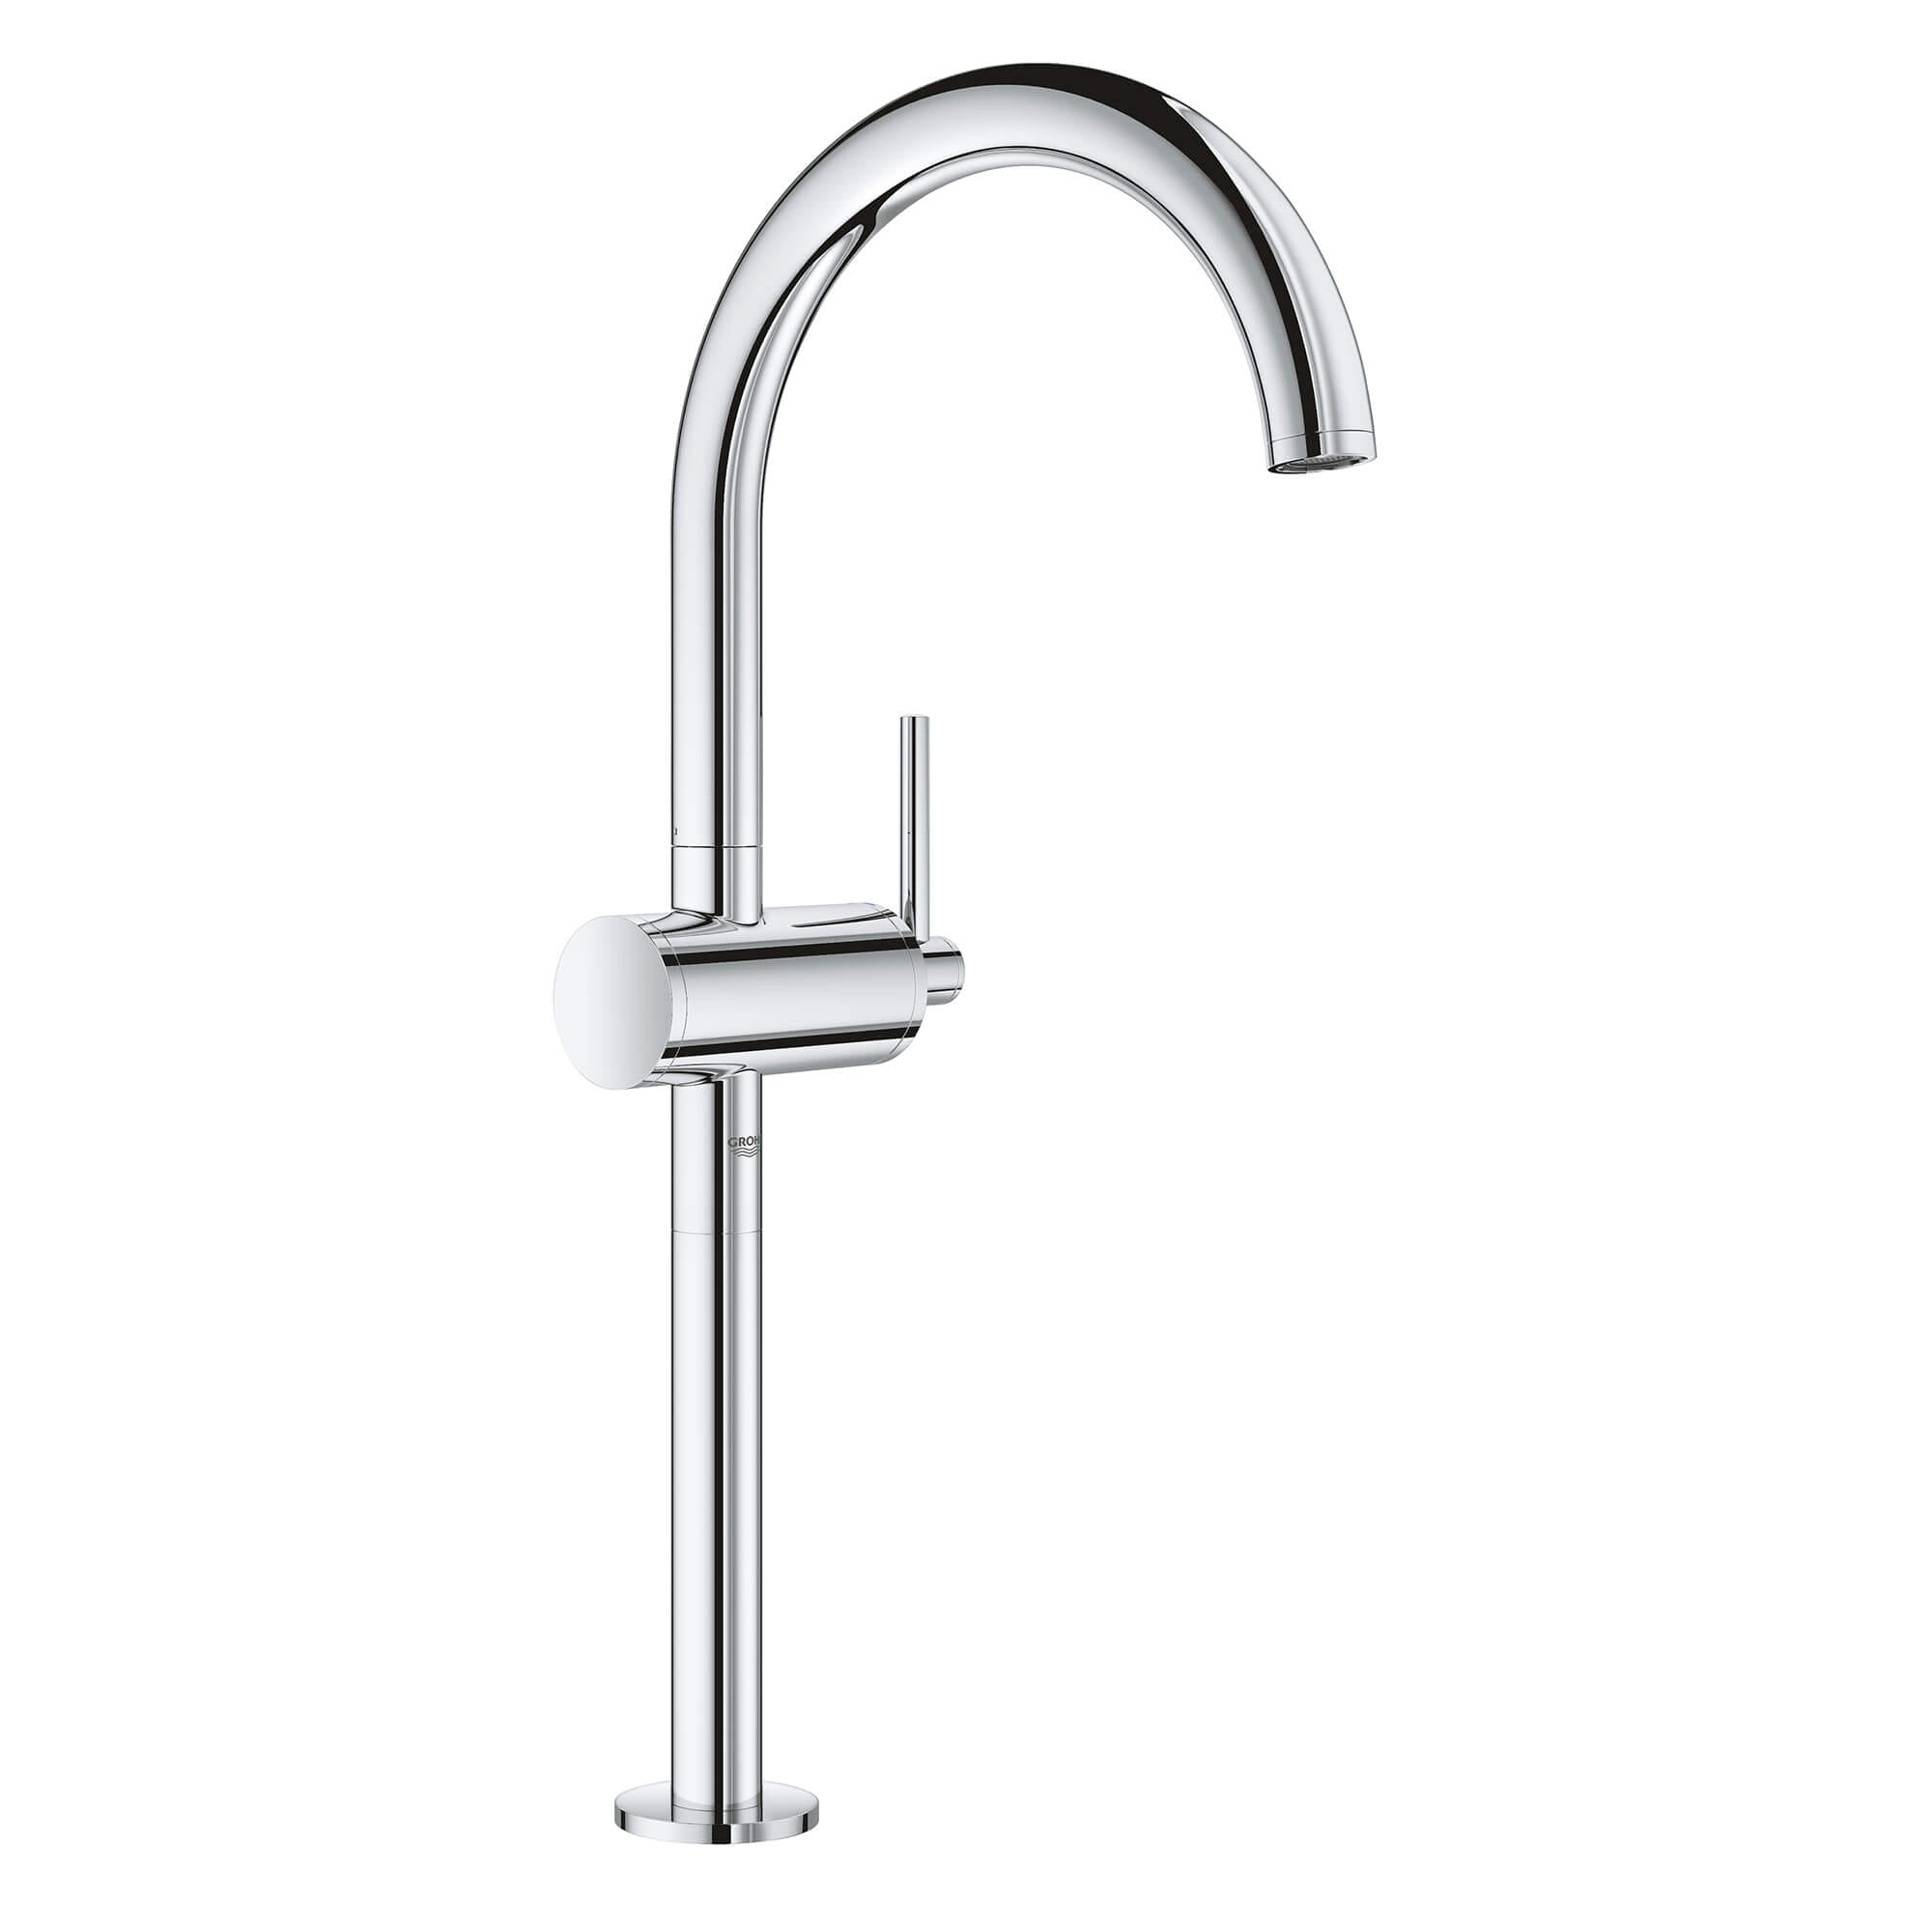 Atrio Single handle Bathroom Faucet XL Size